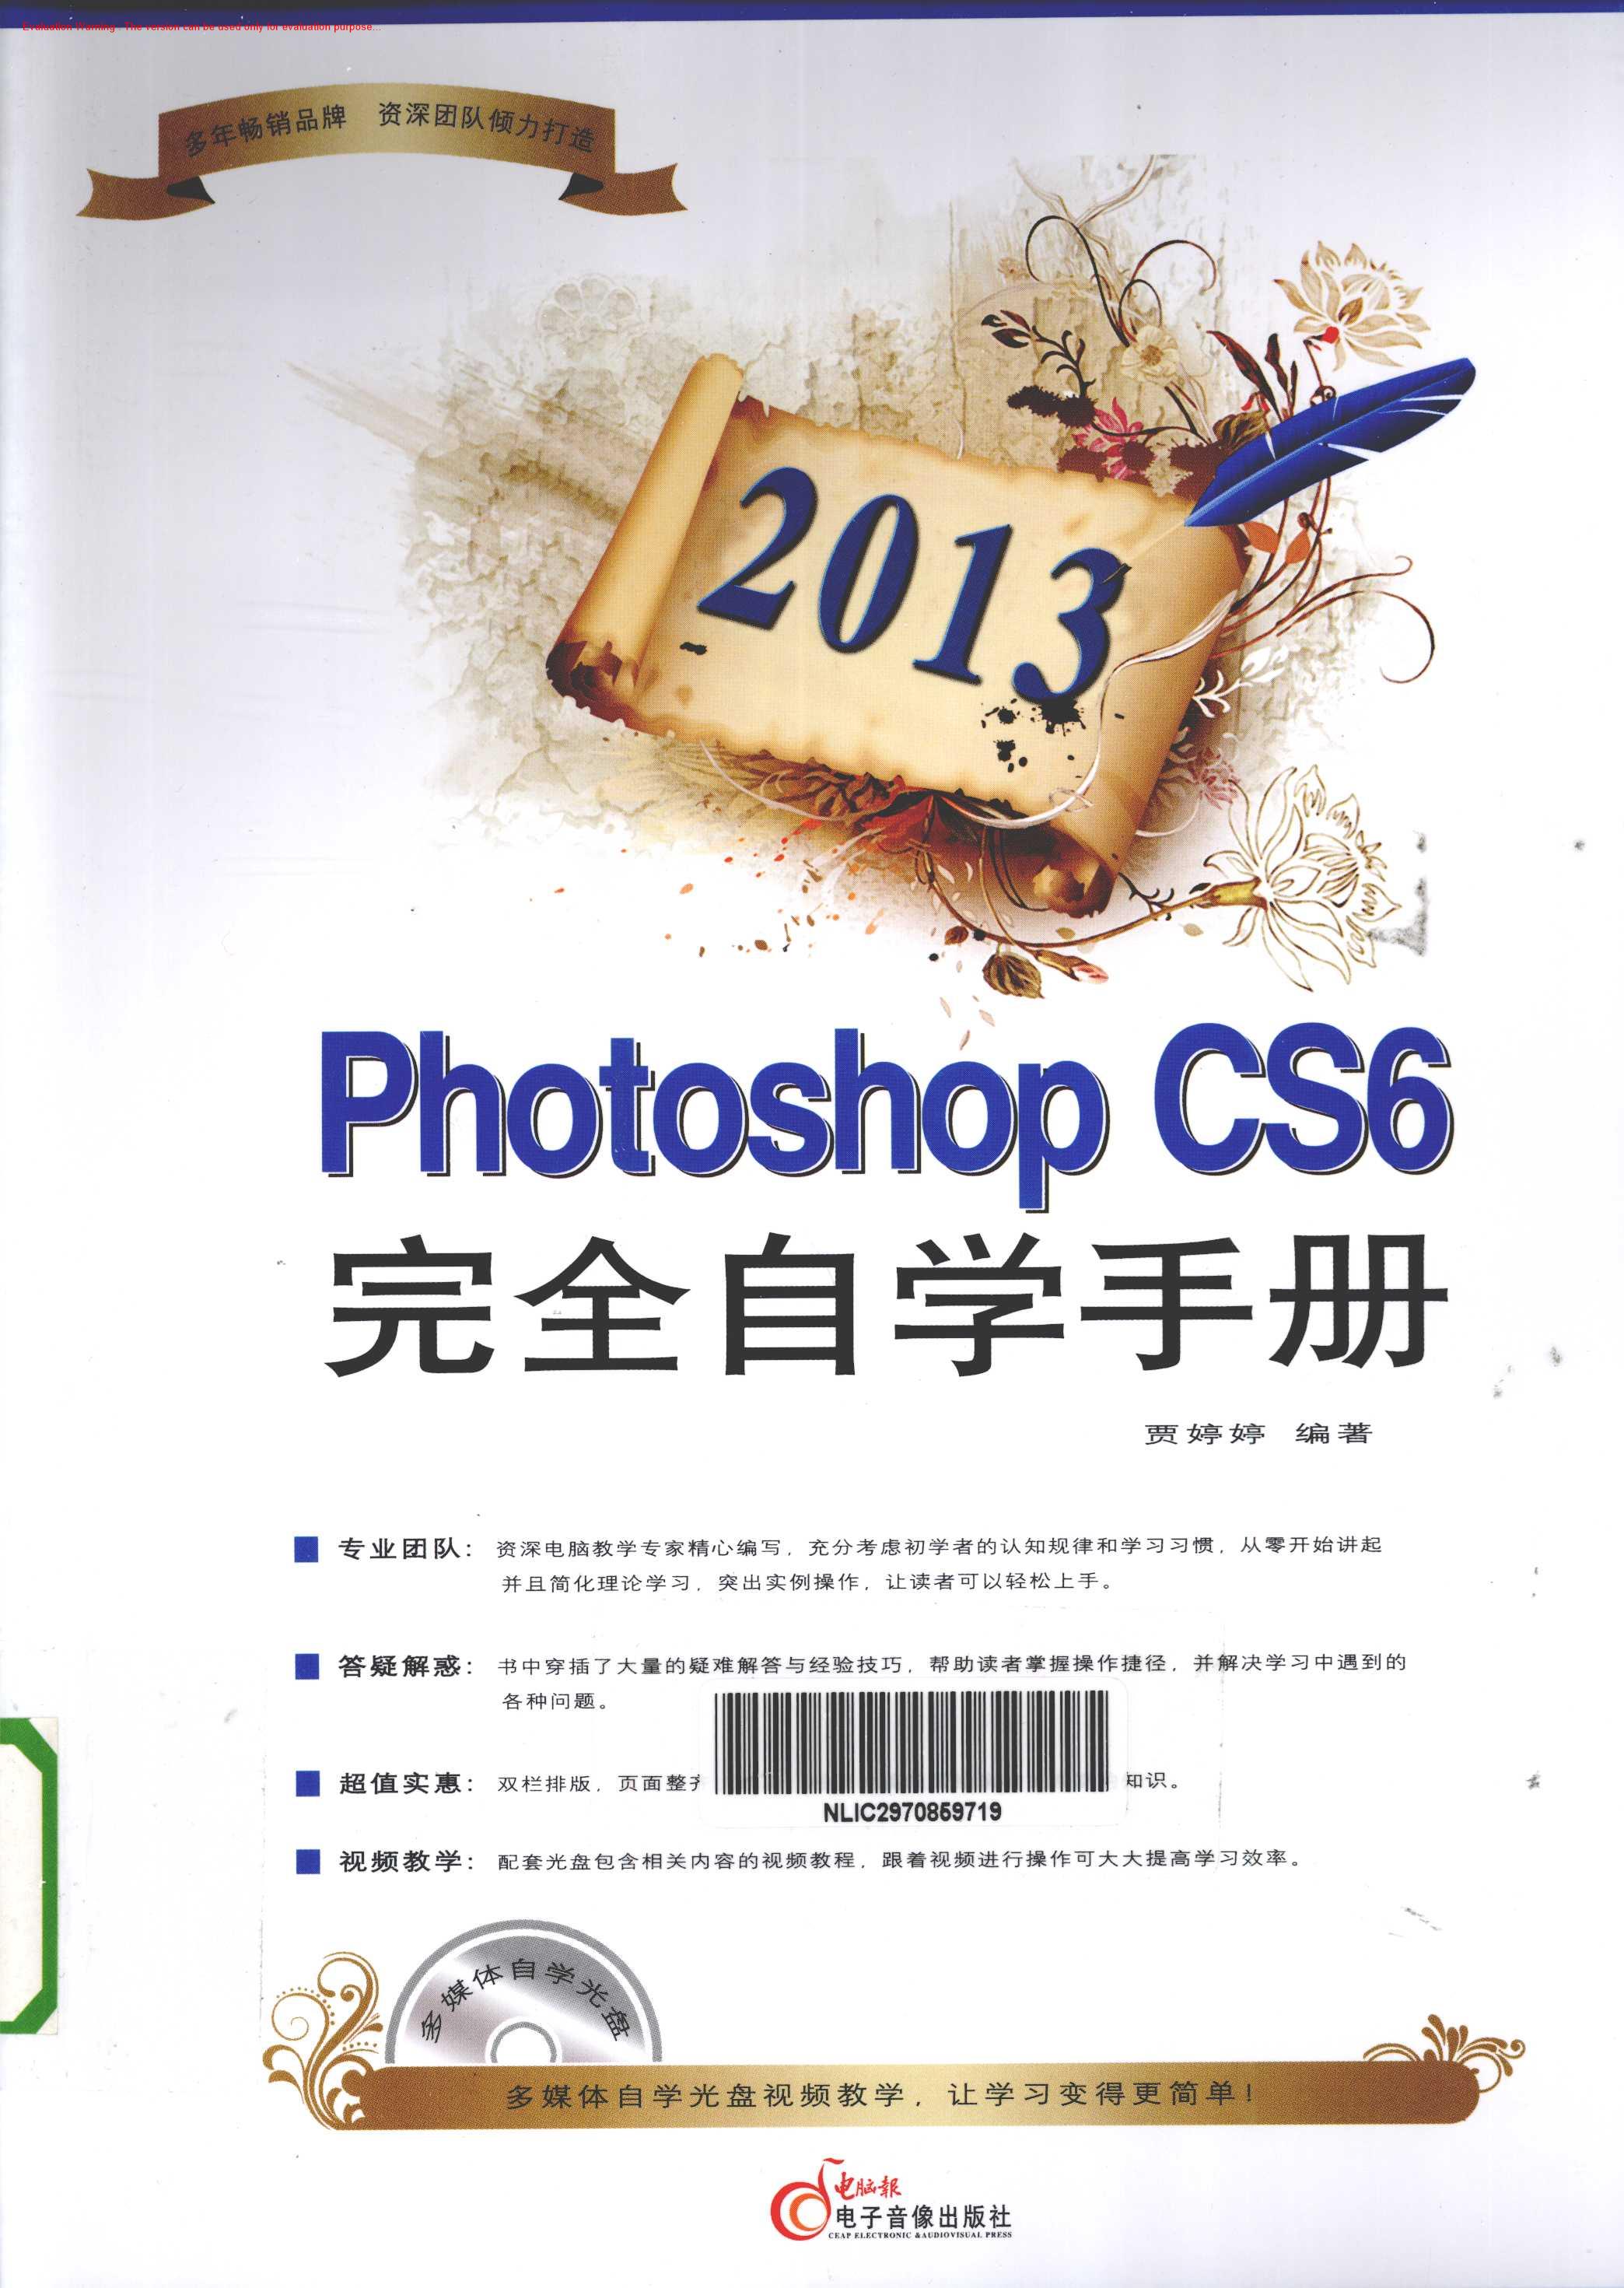 《2013Photoshop CS6完全自学手册_贾婷婷著》